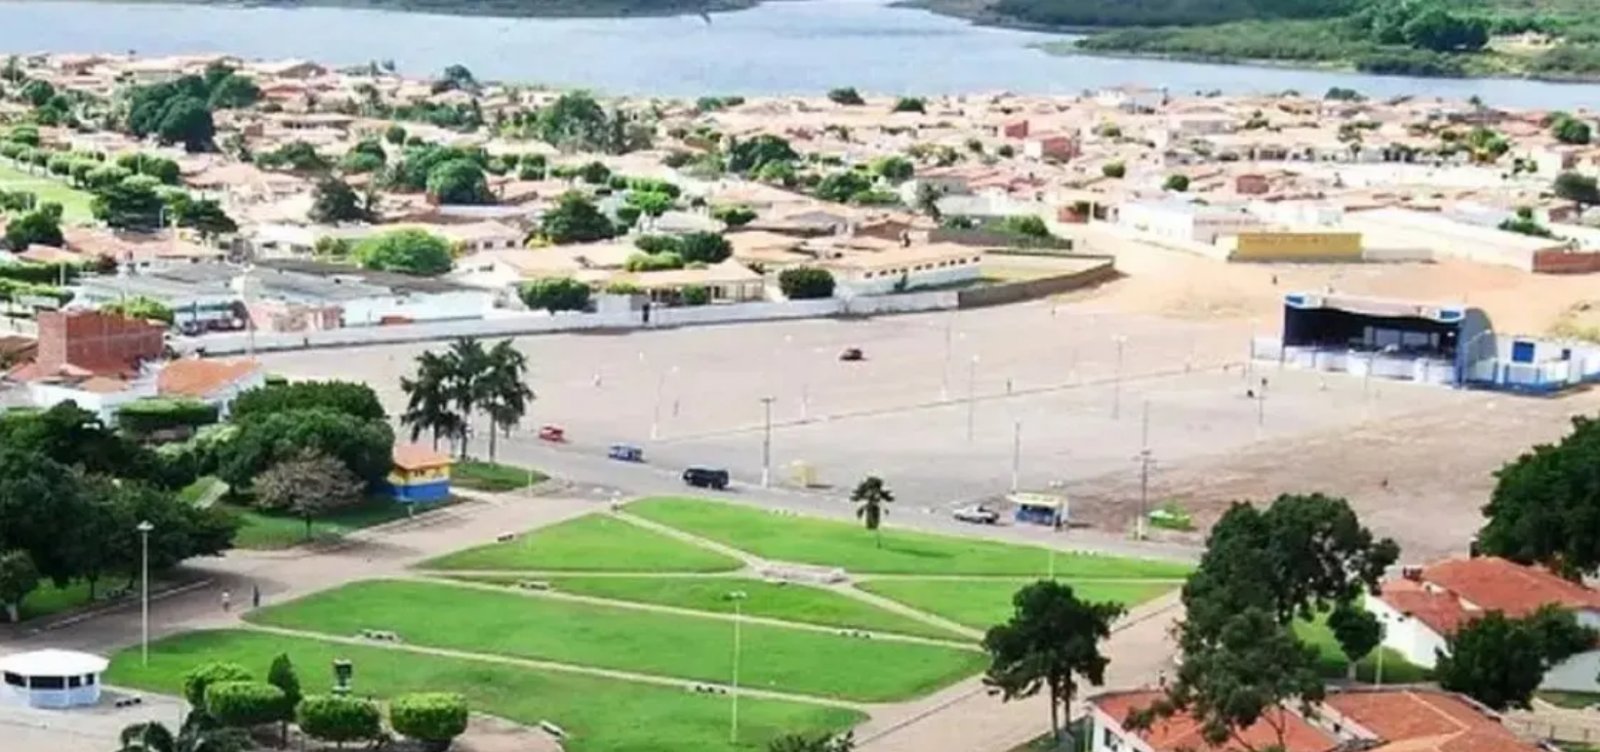 Após embate entre prefeitura e construtora, TJ-BA autoriza venda de lotes em área próxima ao Lago de Sobradinho